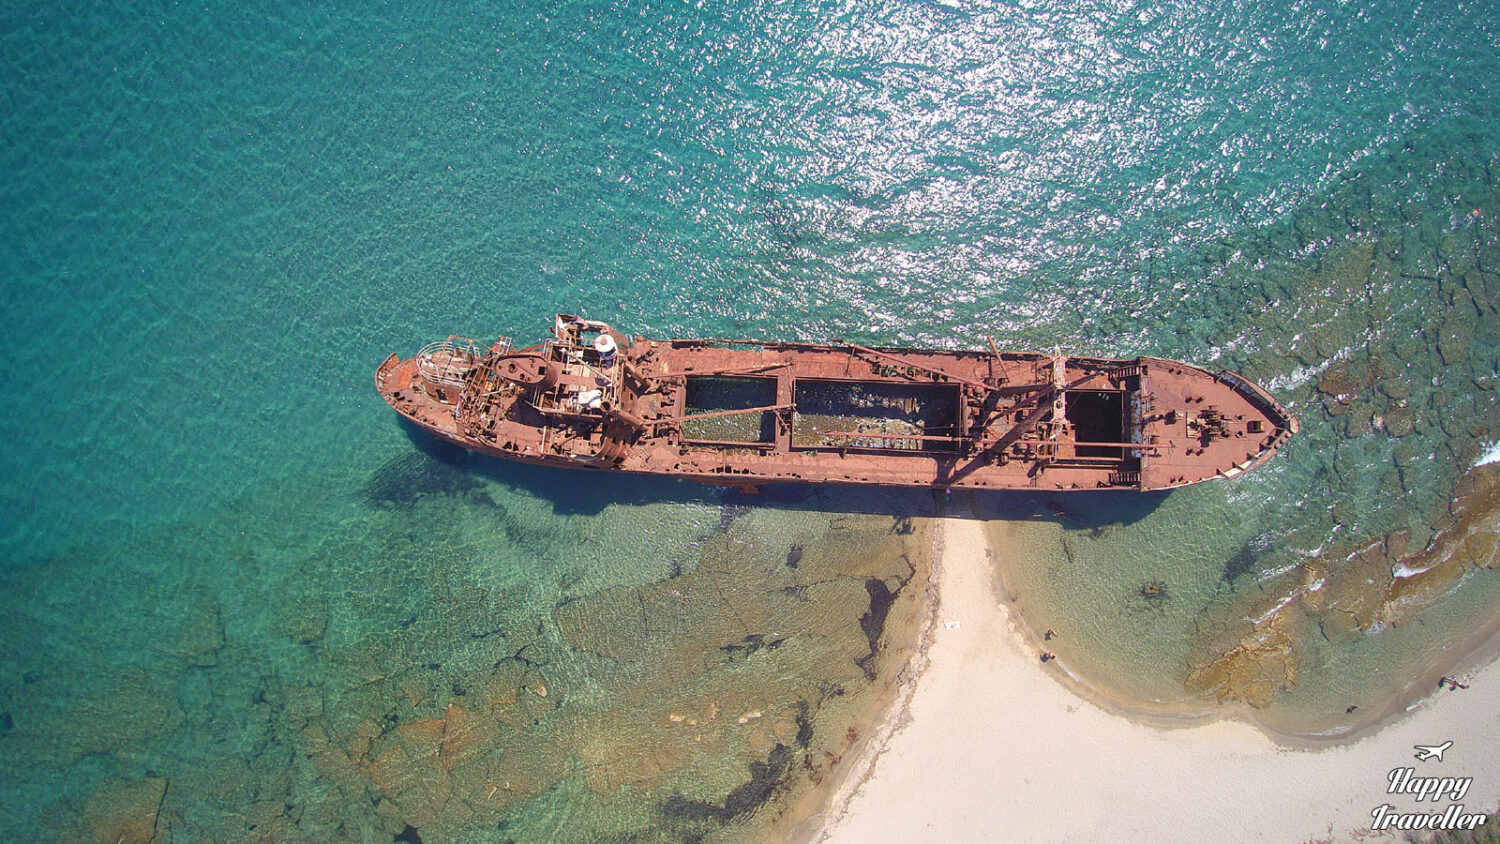 Το “Κόκκινο” Ναυάγιο της Λακωνίας: Η ιστορία του εγκαταλελειμμένου πλοίου (Video) - e-Nautilia.gr | Το Ελληνικό Portal για την Ναυτιλία. Τελευταία νέα, άρθρα, Οπτικοακουστικό Υλικό